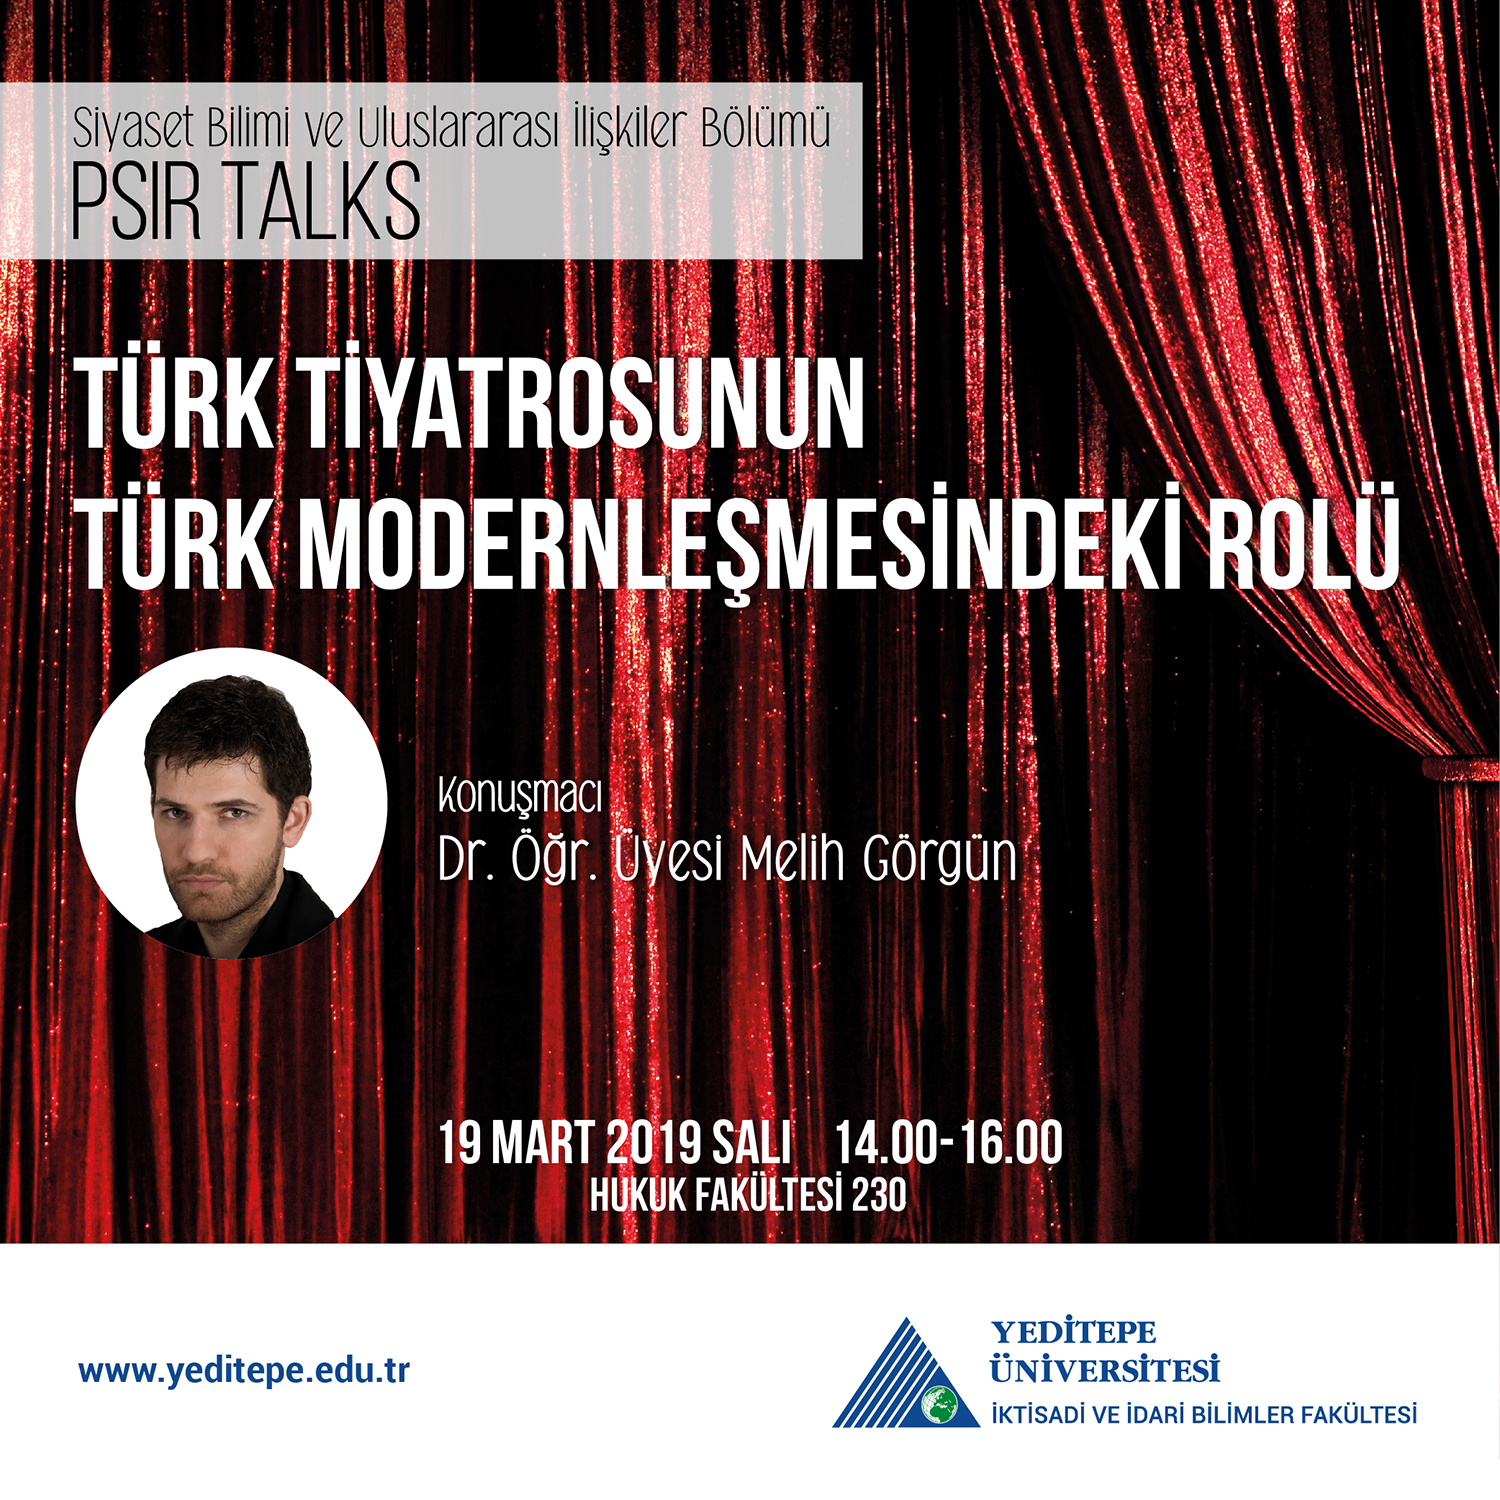 PSIR Talks - Türk Tiyatrosunun Türk Modernleşmesindeki Rolü